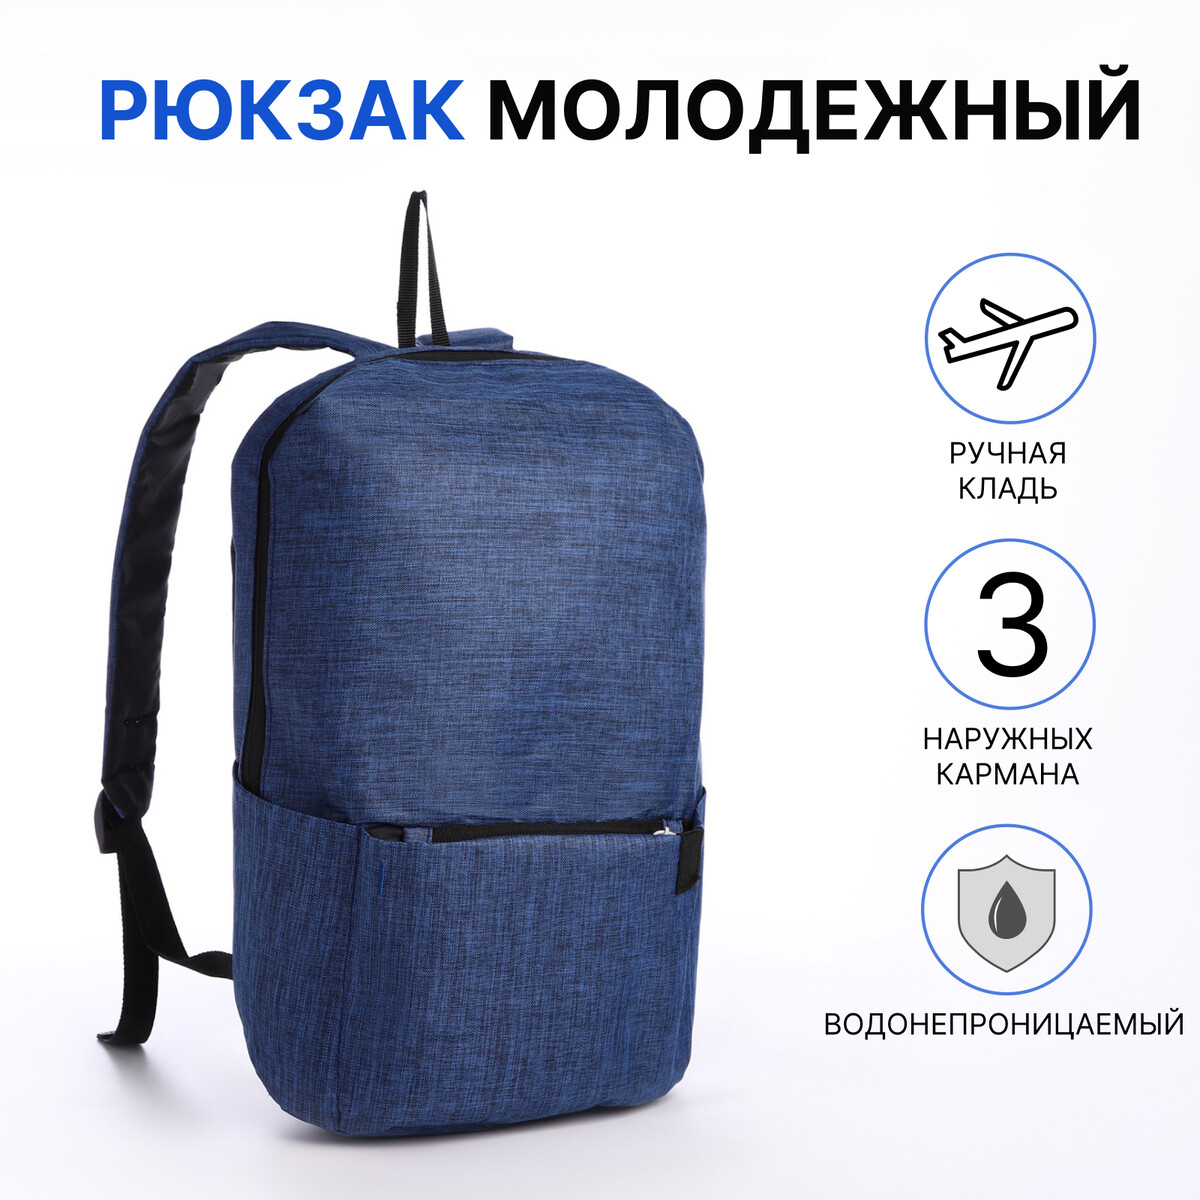 Рюкзак молодежный из текстиля на молнии, водонепроницаемый, наружный карман, цвет синий